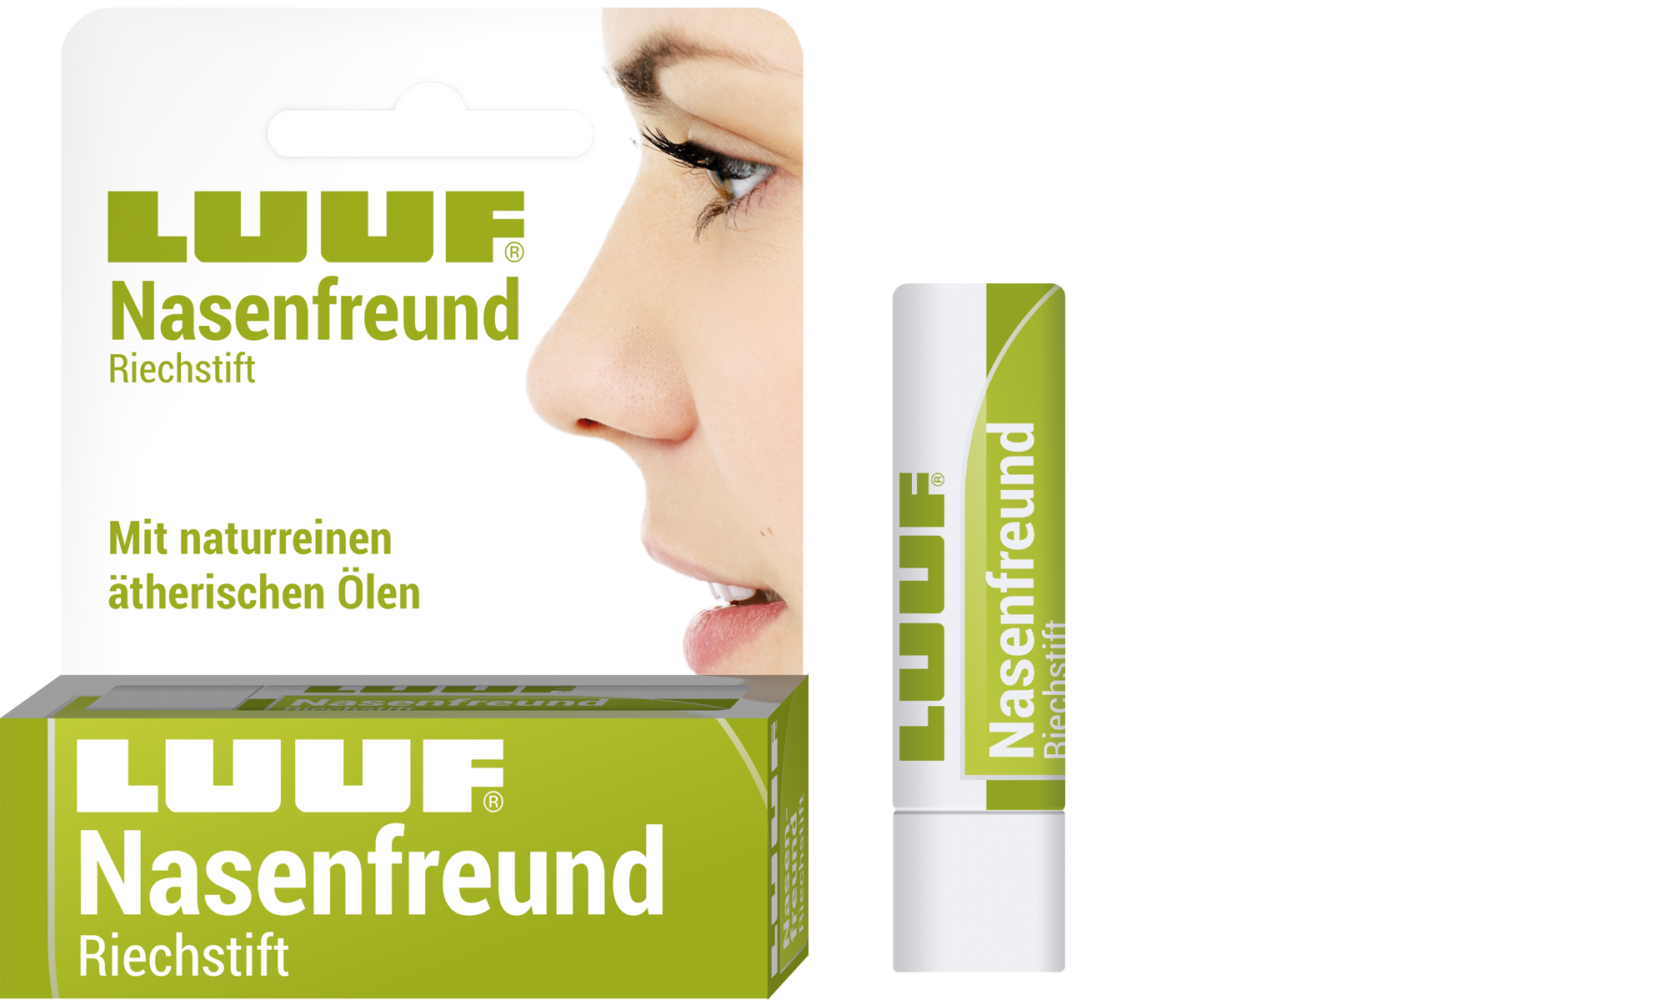 Luuf® Nasenfreund Riechstift mit naturreinen ätherischen Ölen